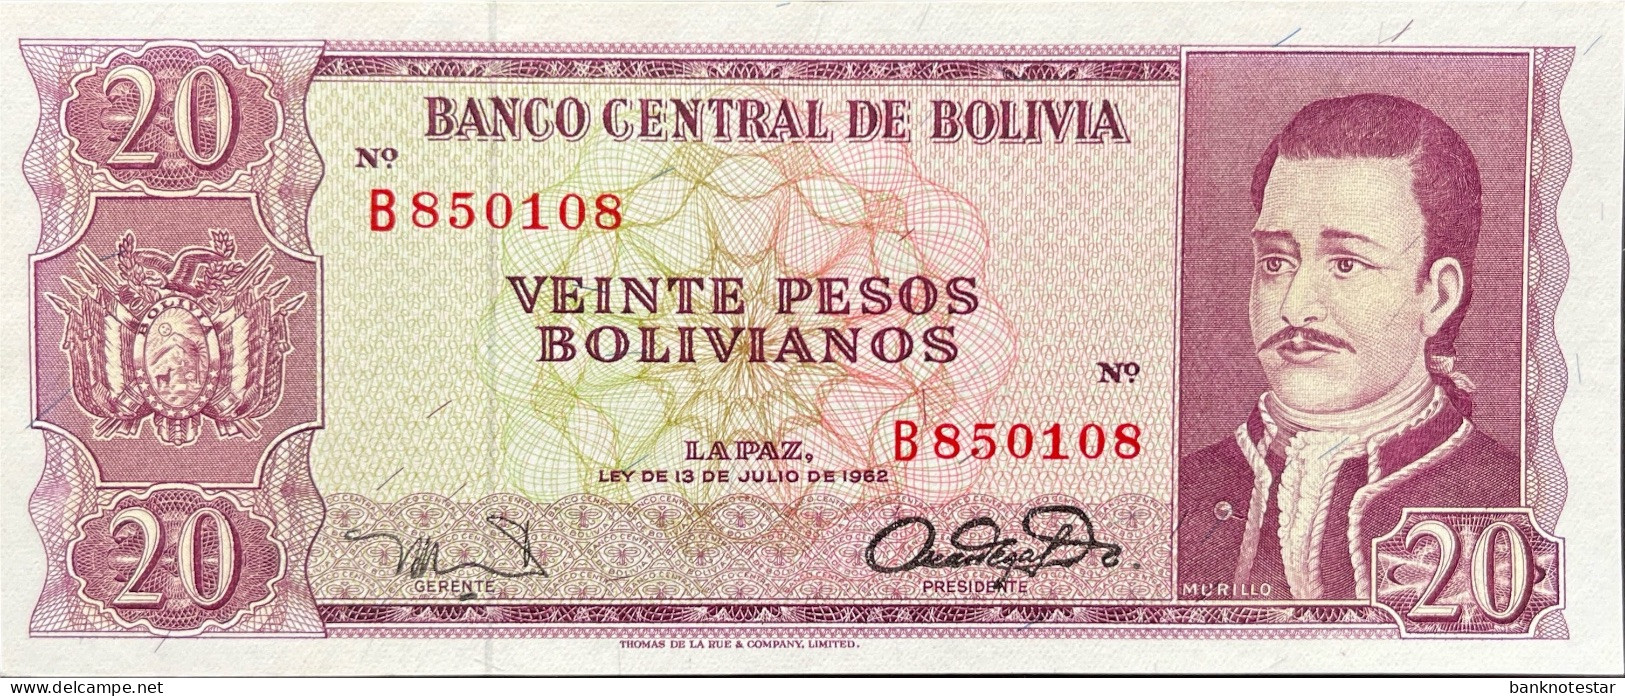 Bolivia 20 Pesos Bolivianos, P-161 (L.1962) - UNC - RARE - Bolivië